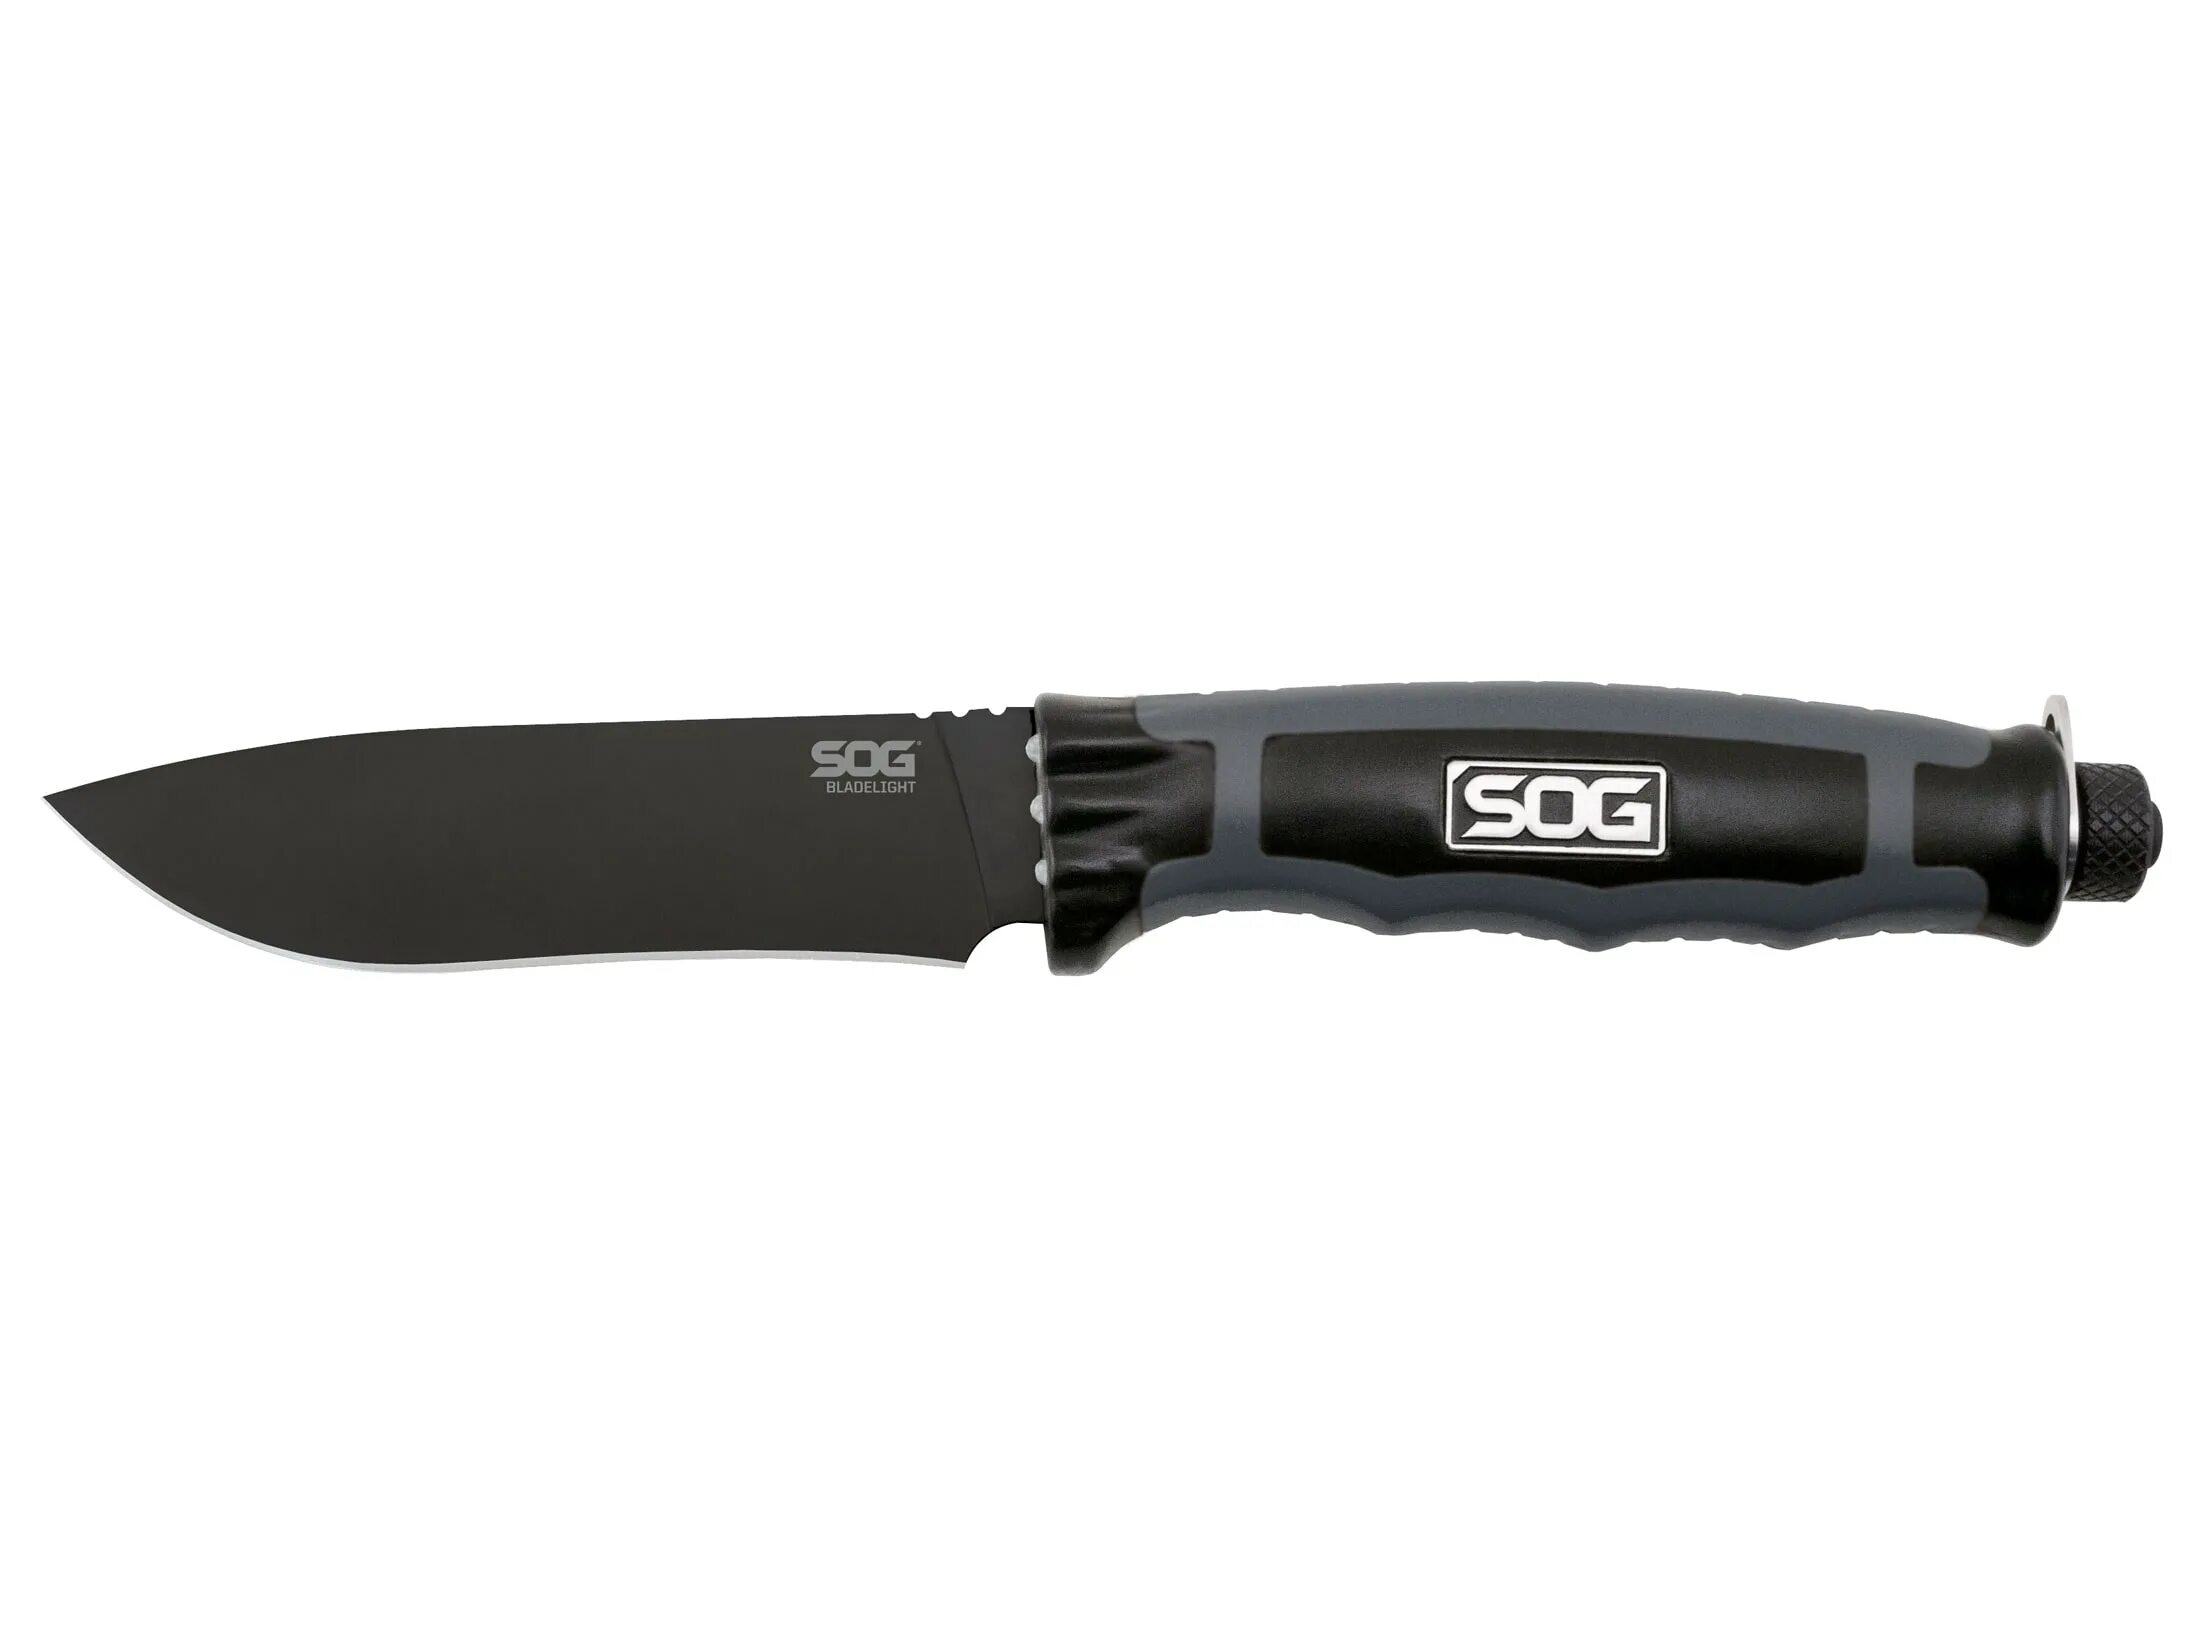 Нож SOG Seal XR. SOG BLADELIGHT Tactical. SOG Specialty ножи. Нож SOG Specialty Knives метательный. Ножи sog купить